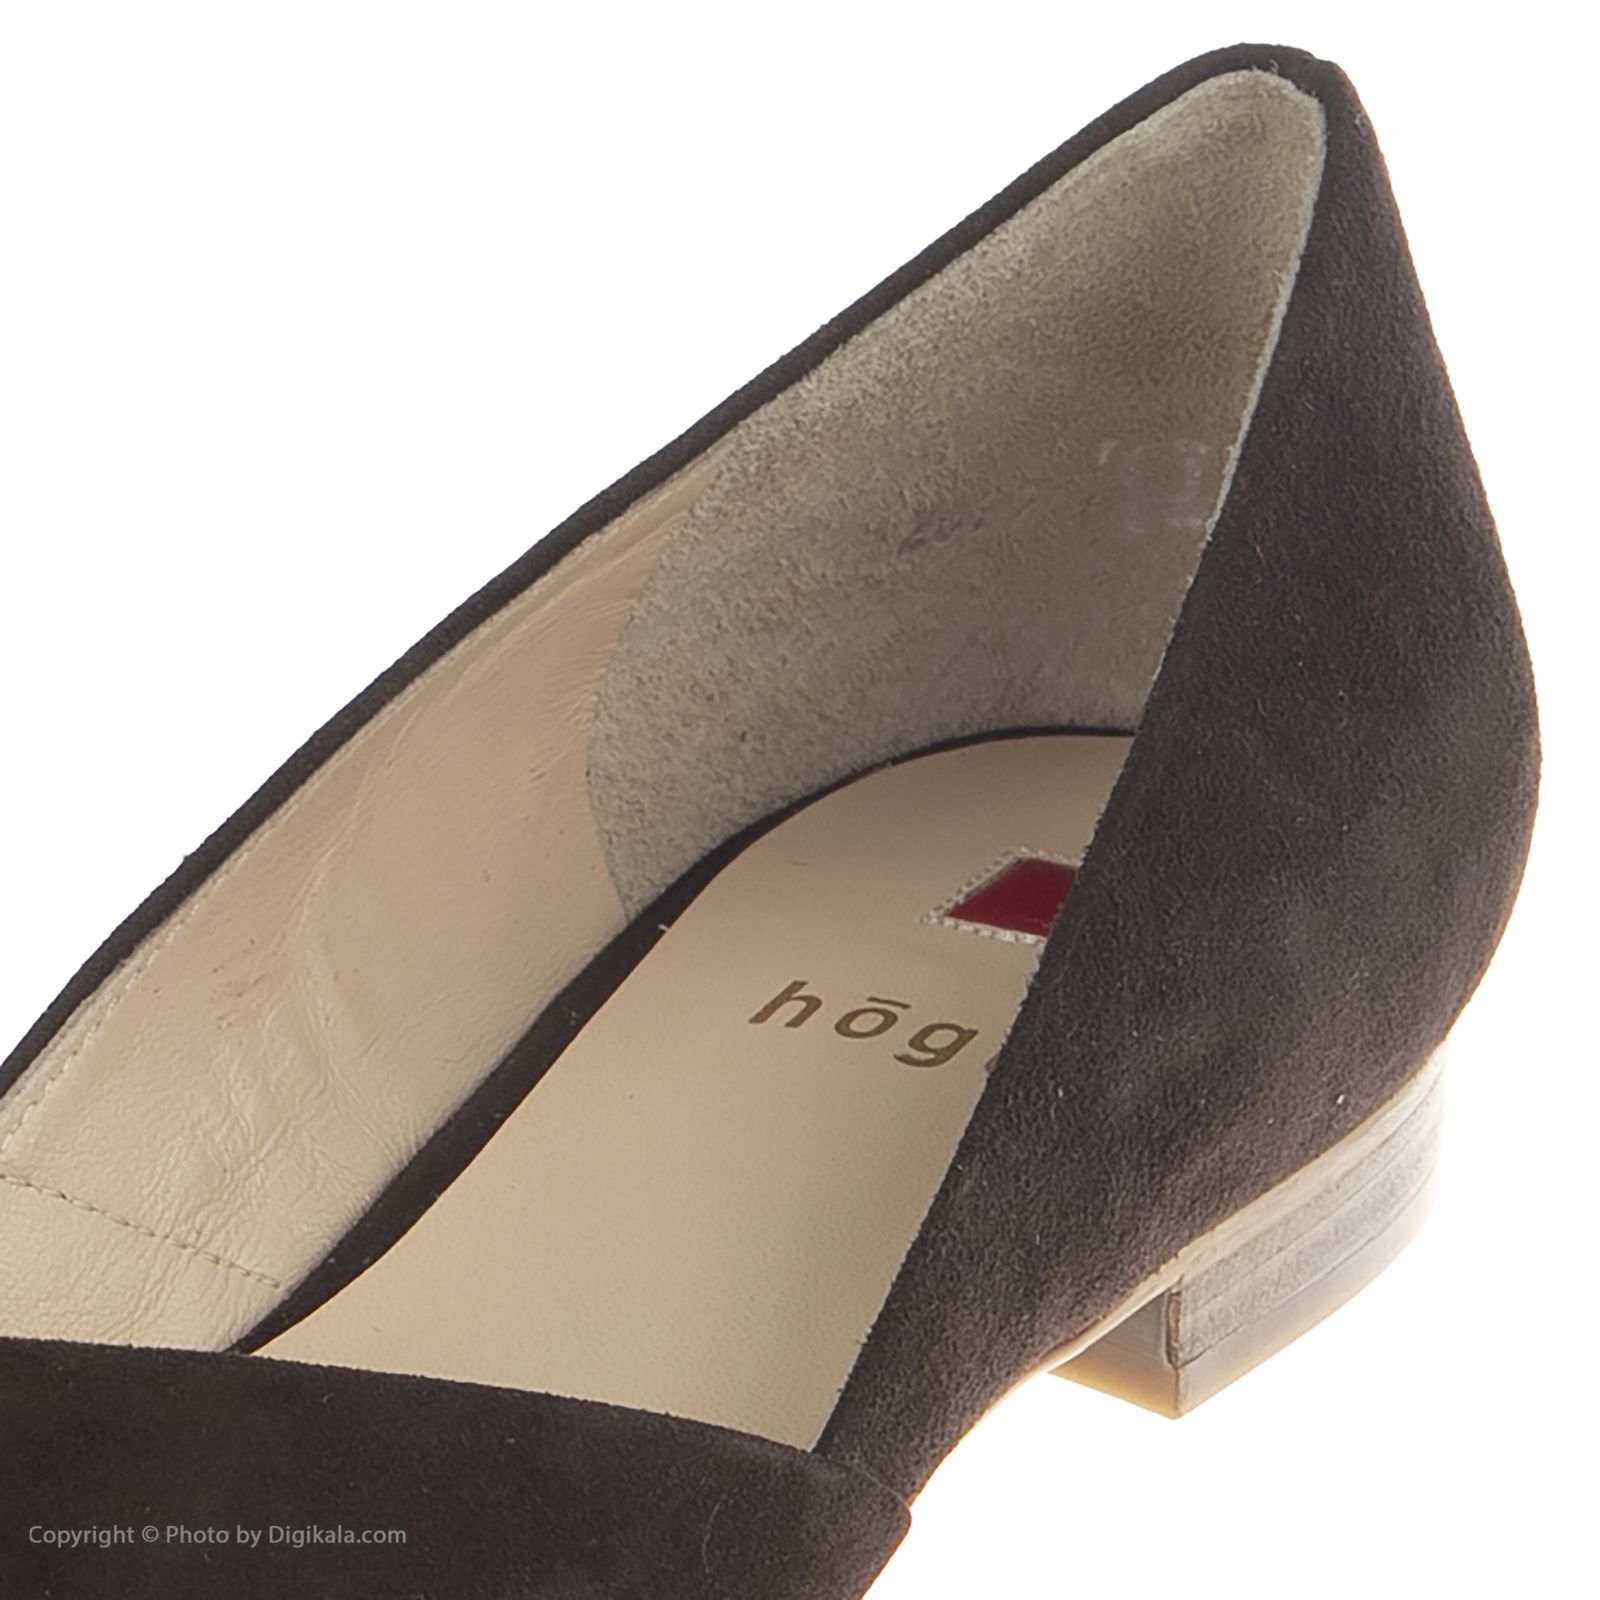 کفش زنانه هوگل مدل 3-102012-2200 - قهوه ای تیره - 7